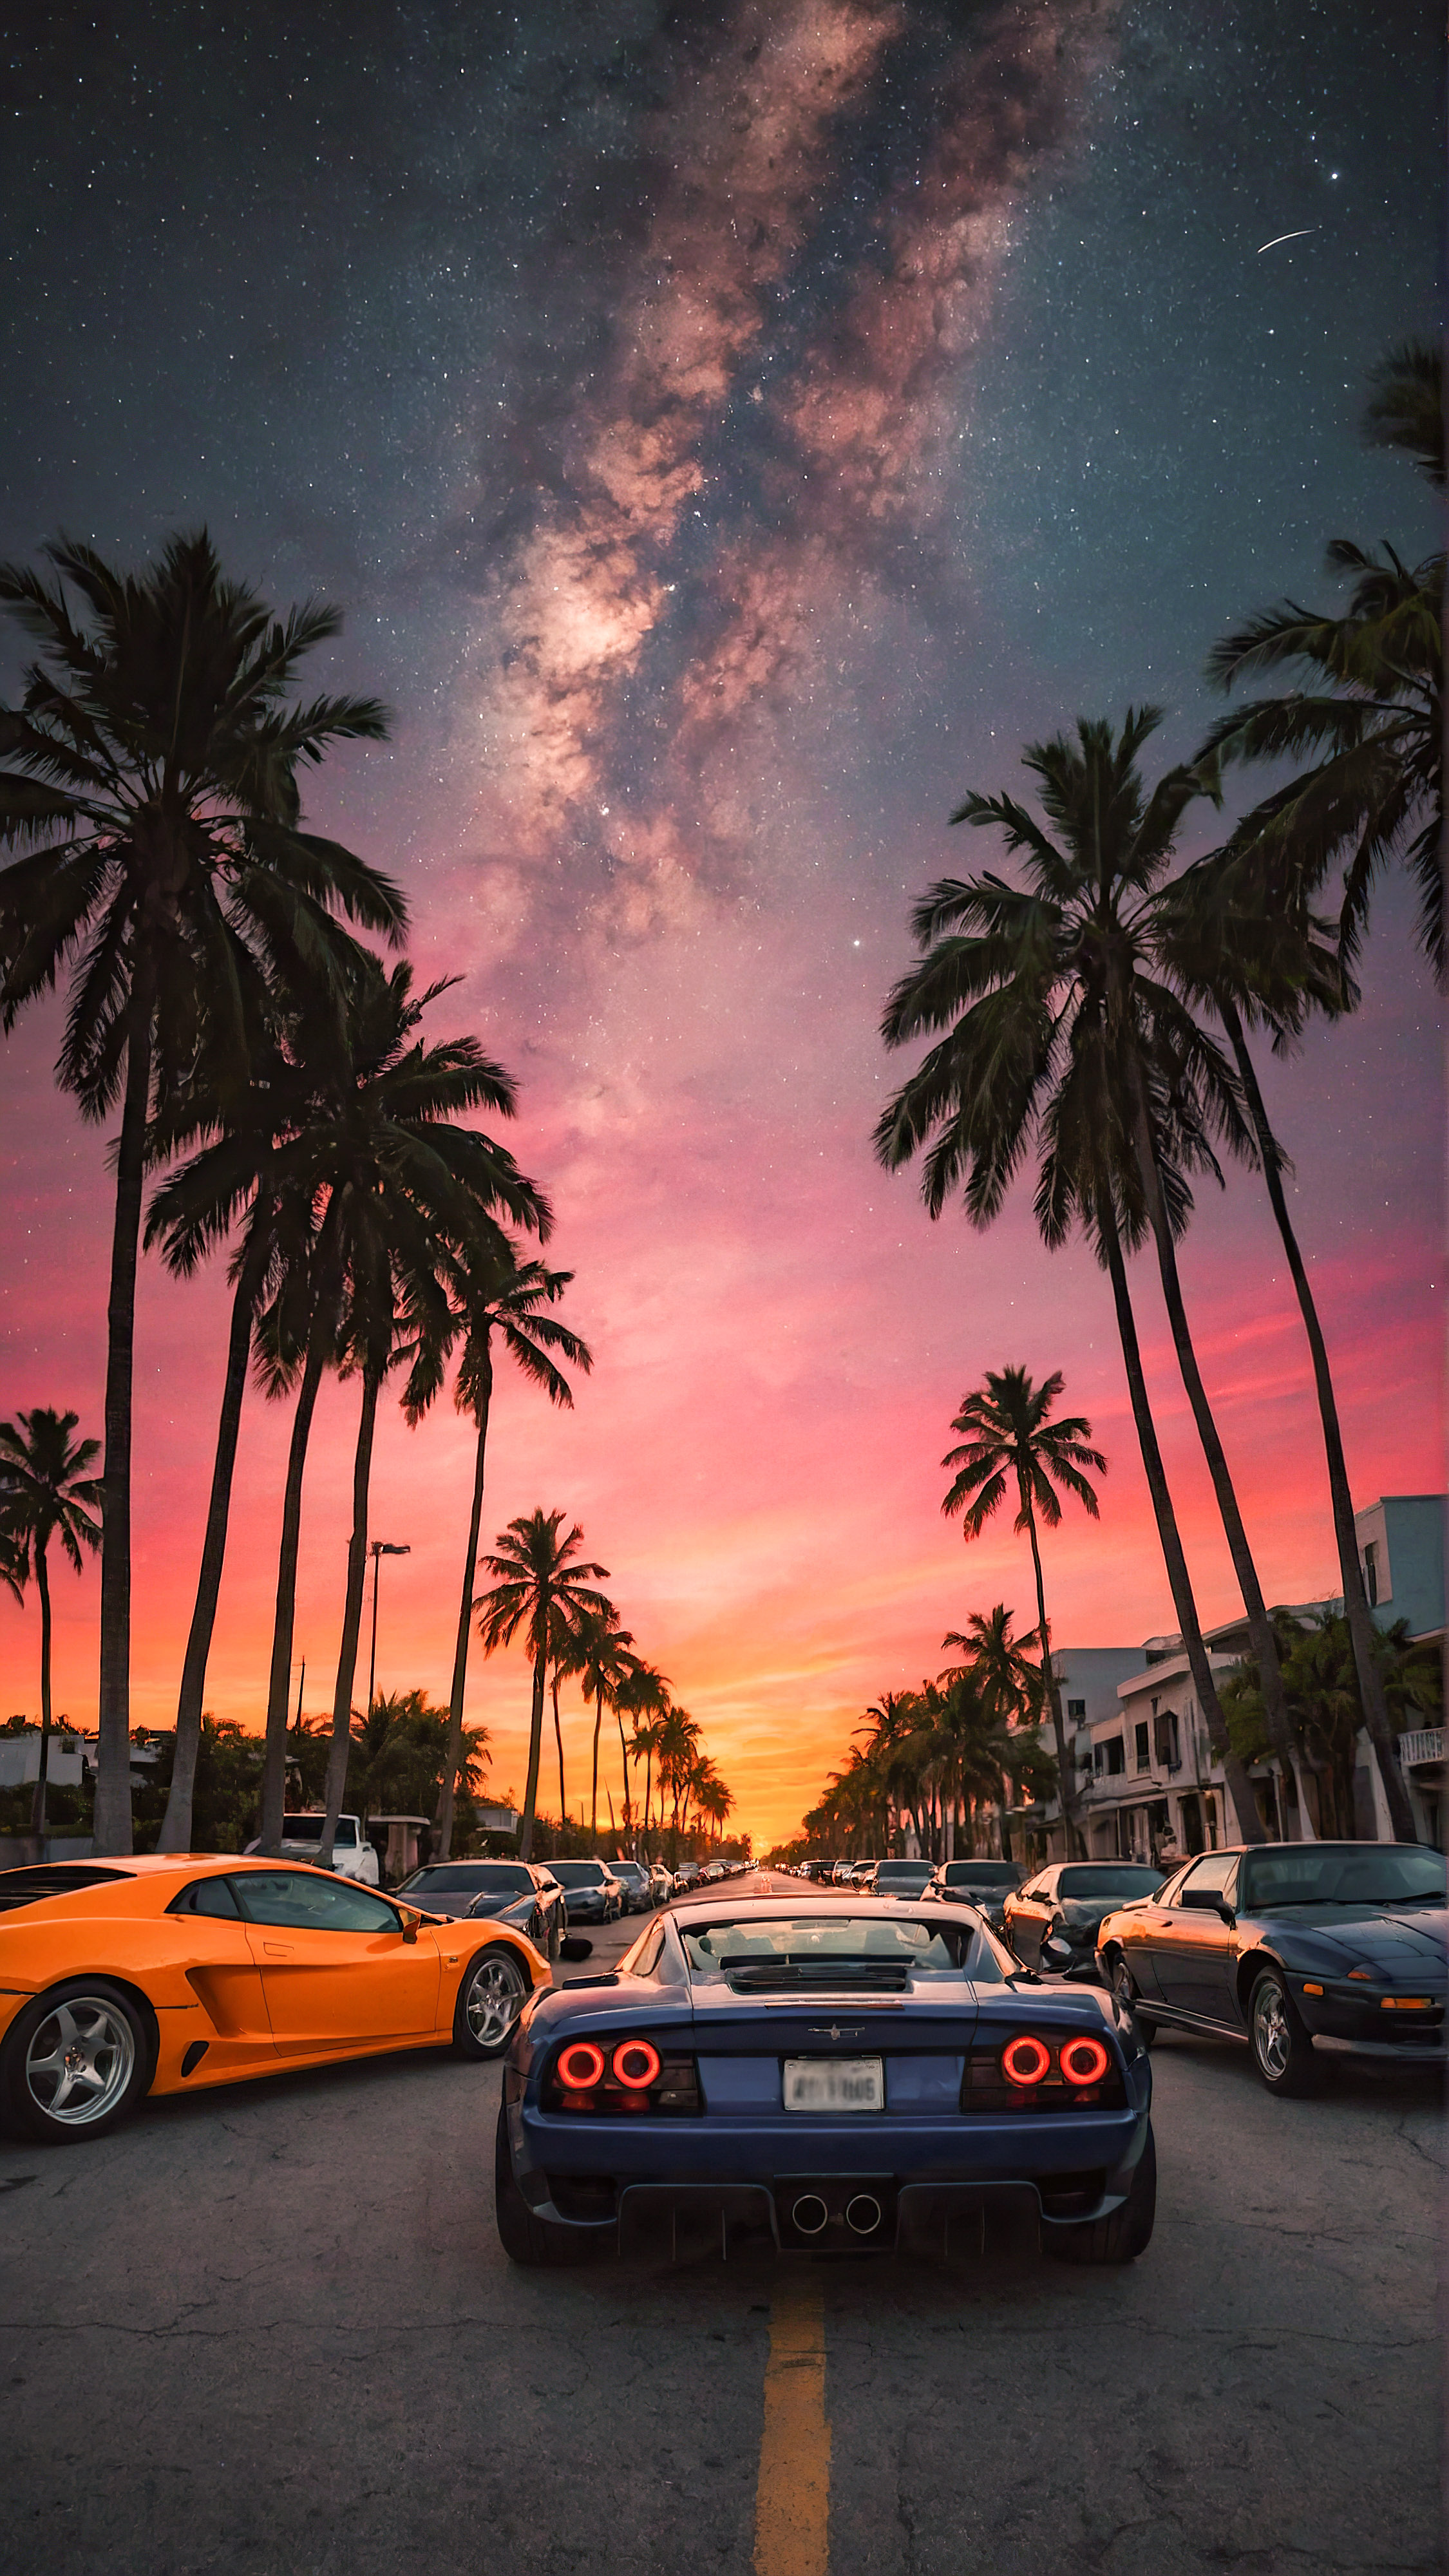 Ressentez la vibrance d'un paysage urbain au crépuscule avec notre arrière-plan iPhone avec des voitures, présentant un coucher de soleil vibrant dans une rue avec des voitures de sport alignées avec des palmiers, sous un ciel étoilé avec un croissant de lune, ajoutant une touche de charme urbain à votre appareil.